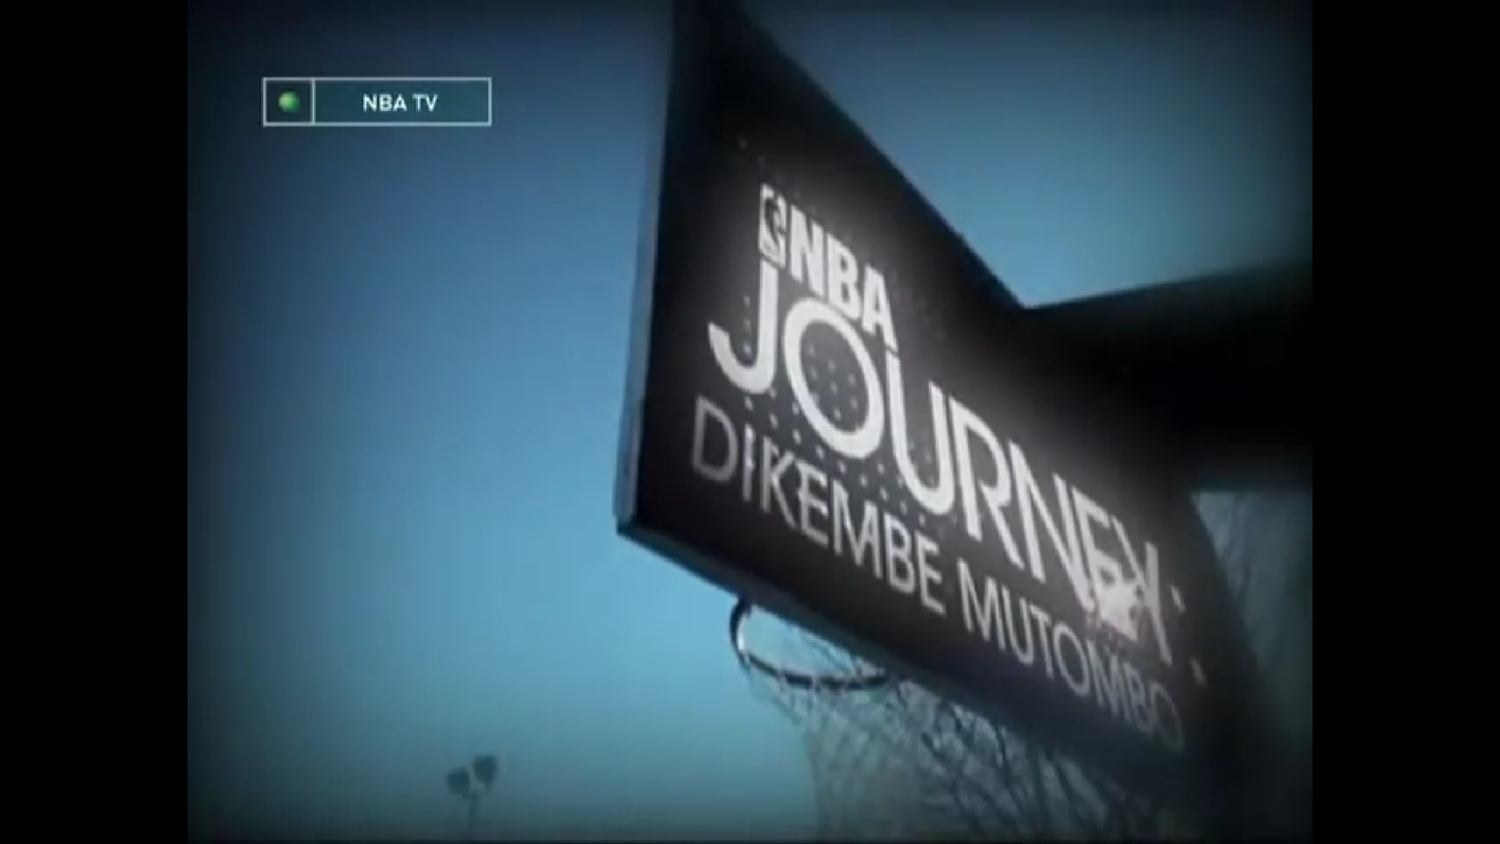 NBA Journey. Дикембе Мутобмо. Телеканал NBA TV